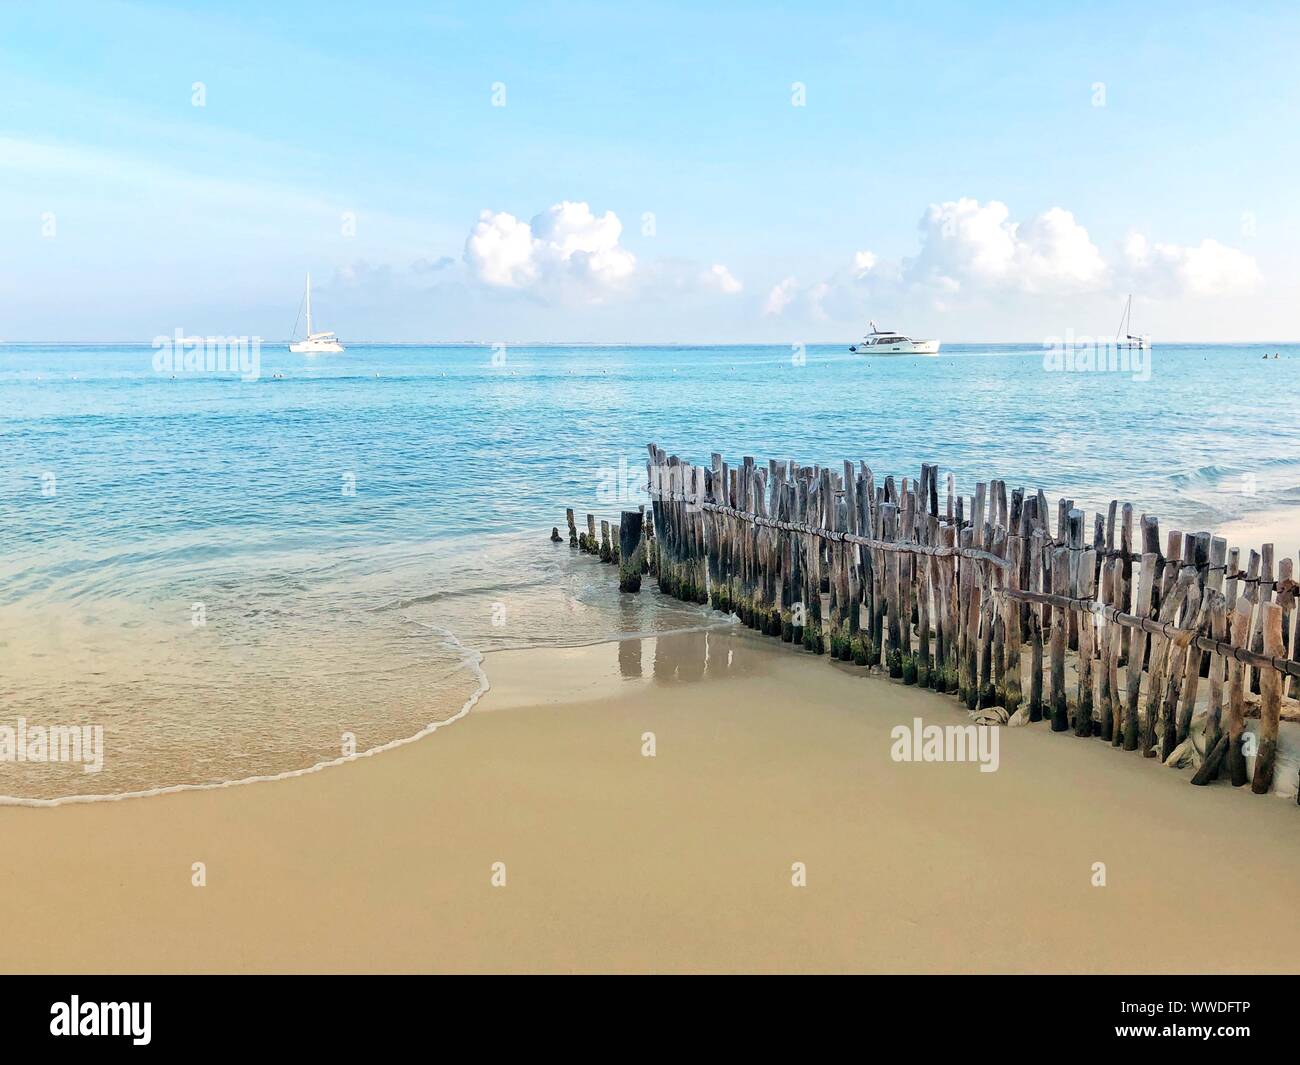 Wooden fence on beach, Playa Norte, Isla Mujeres, Quintana Roo, Yucatan Peninsula, Mexico Stock Photo